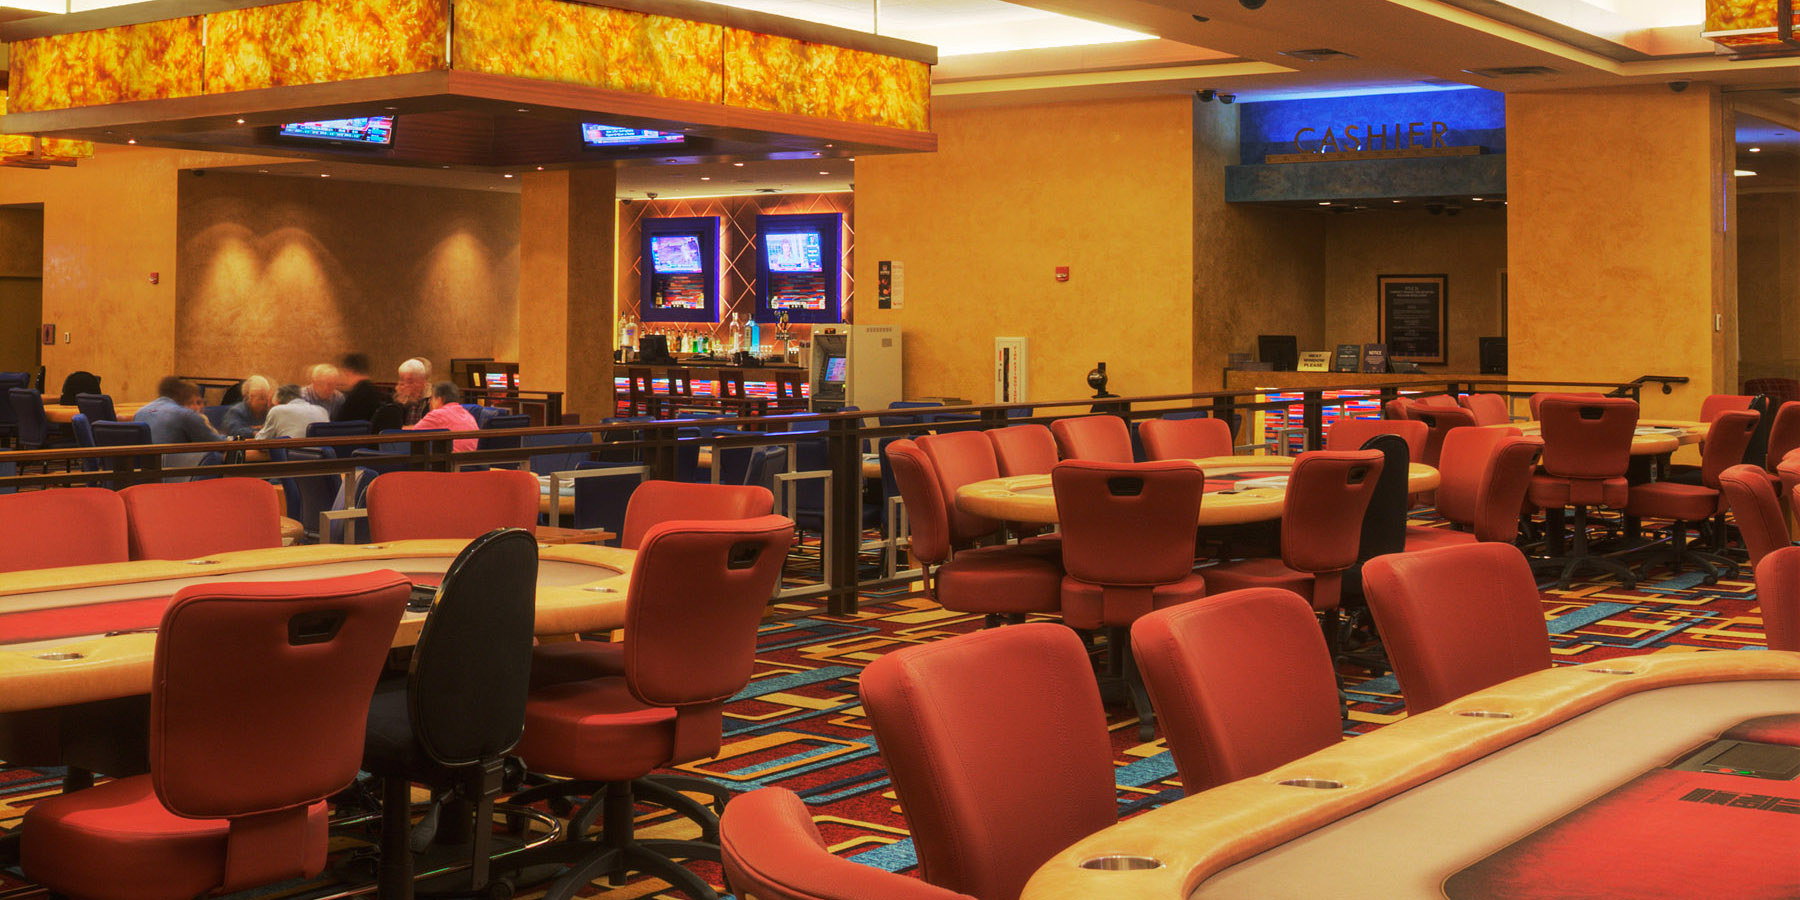 Where Is The Best grand rush casino?